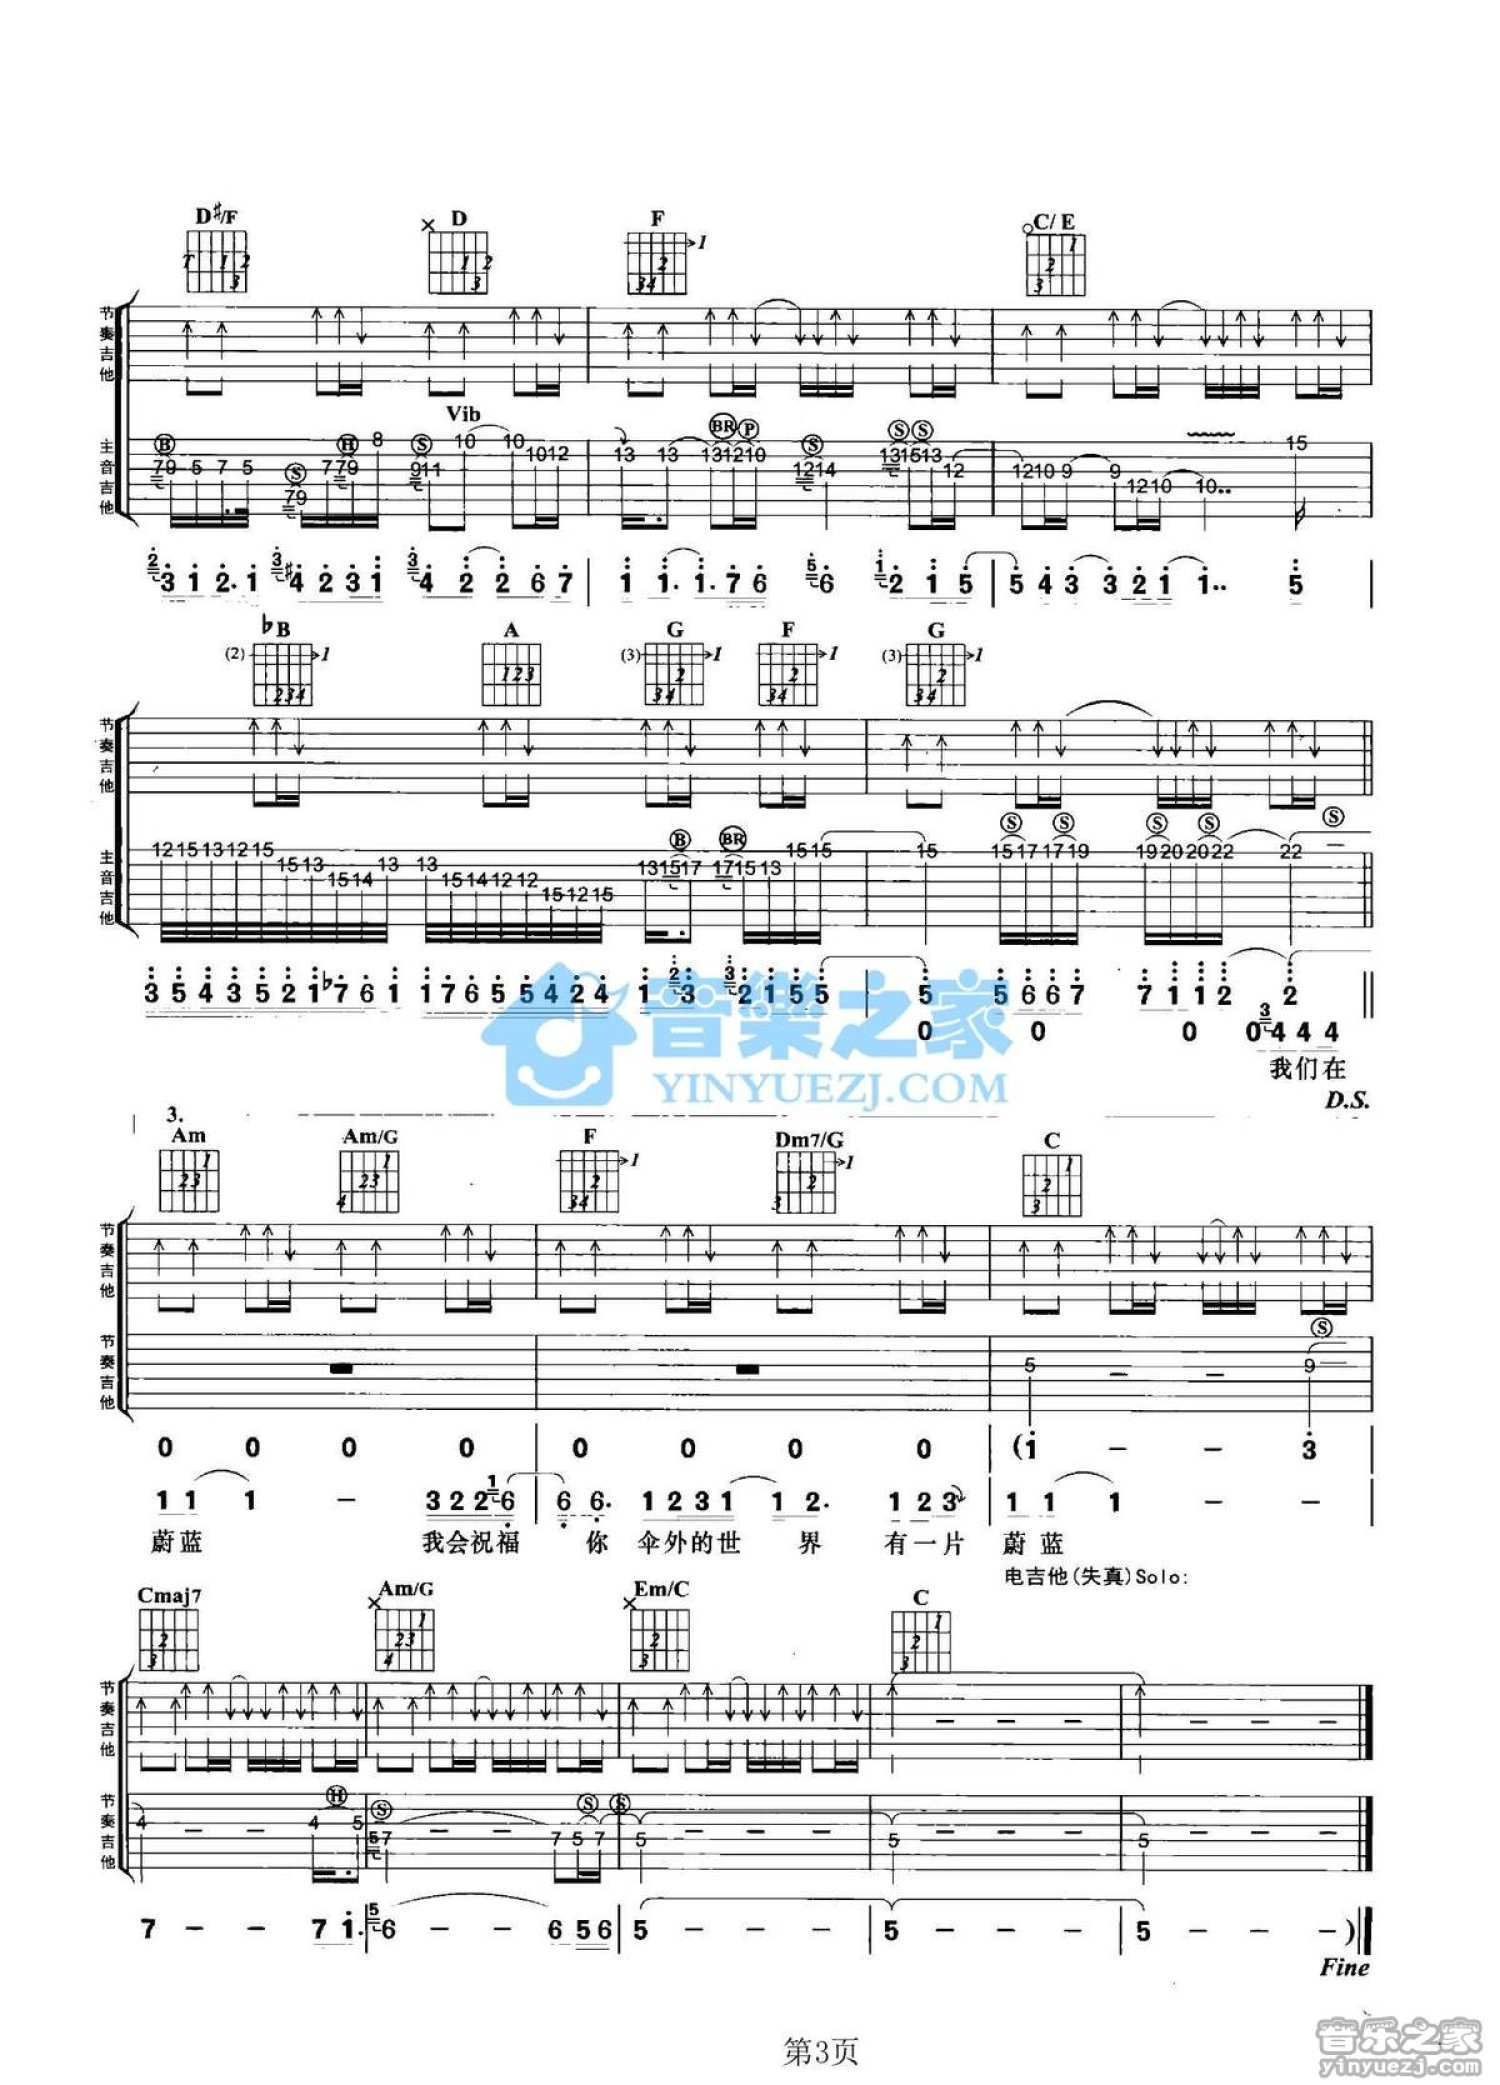 周杰伦【雨下一整晚【原调 简易】钢琴谱】_在线免费打印下载-爱弹琴乐谱网